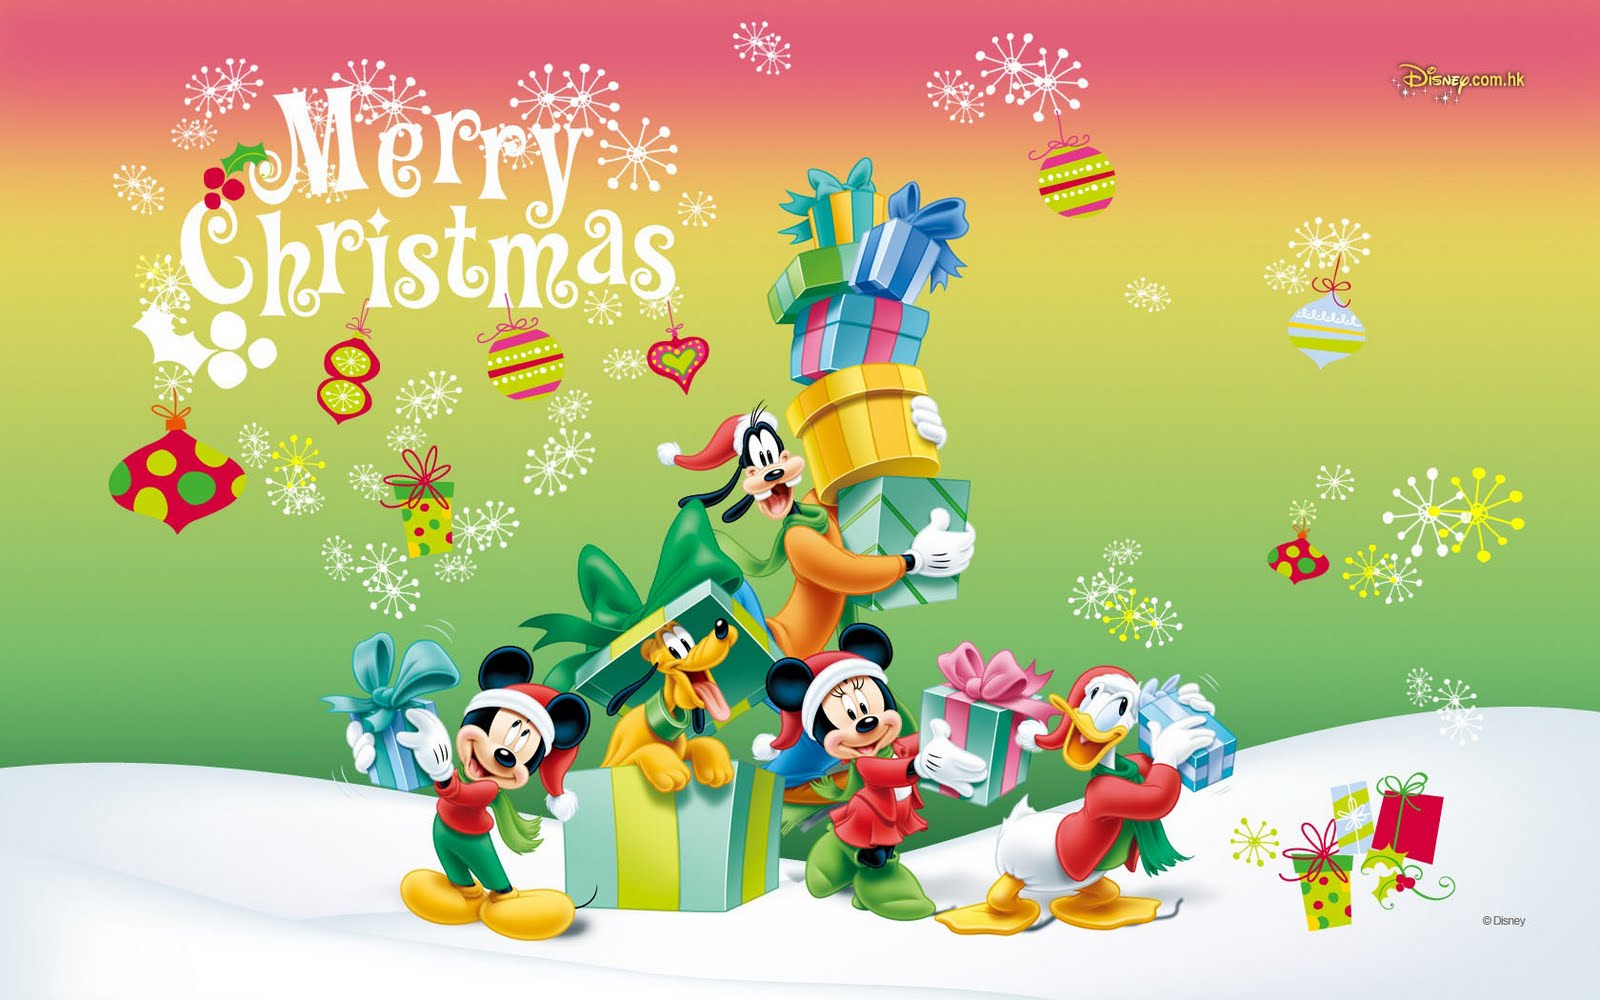 76+] Disney Christmas Wallpapers - WallpaperSafari